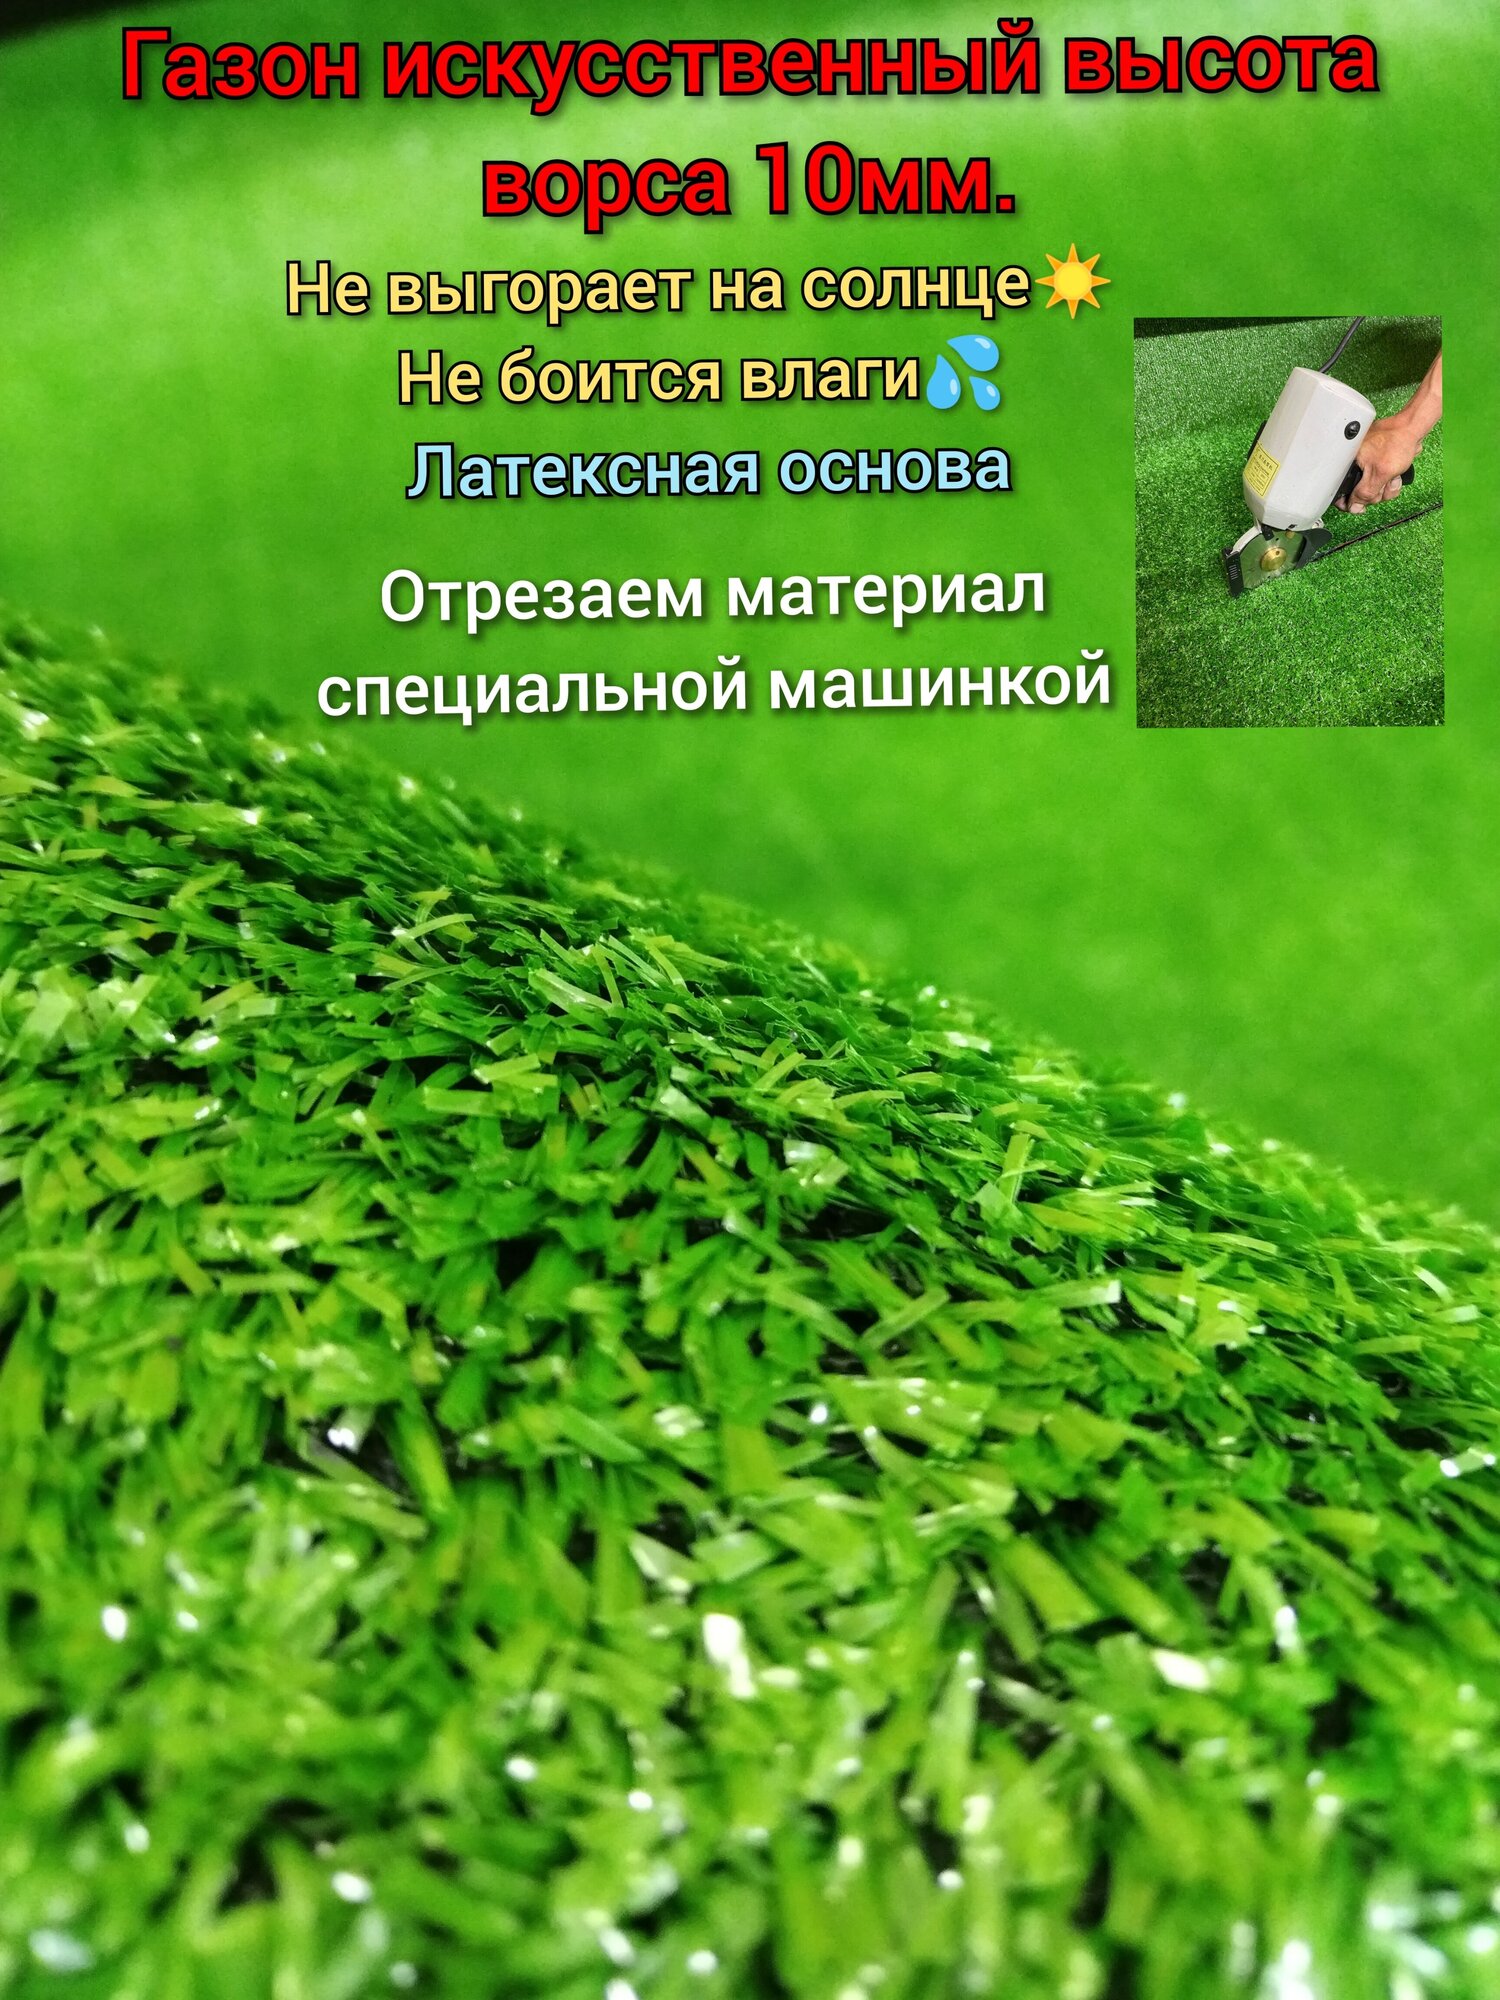 Искусственный газон 2.5 х 1 (высота ворса 10мм) Газон искусственный зеленый, искусственная трава - фотография № 1